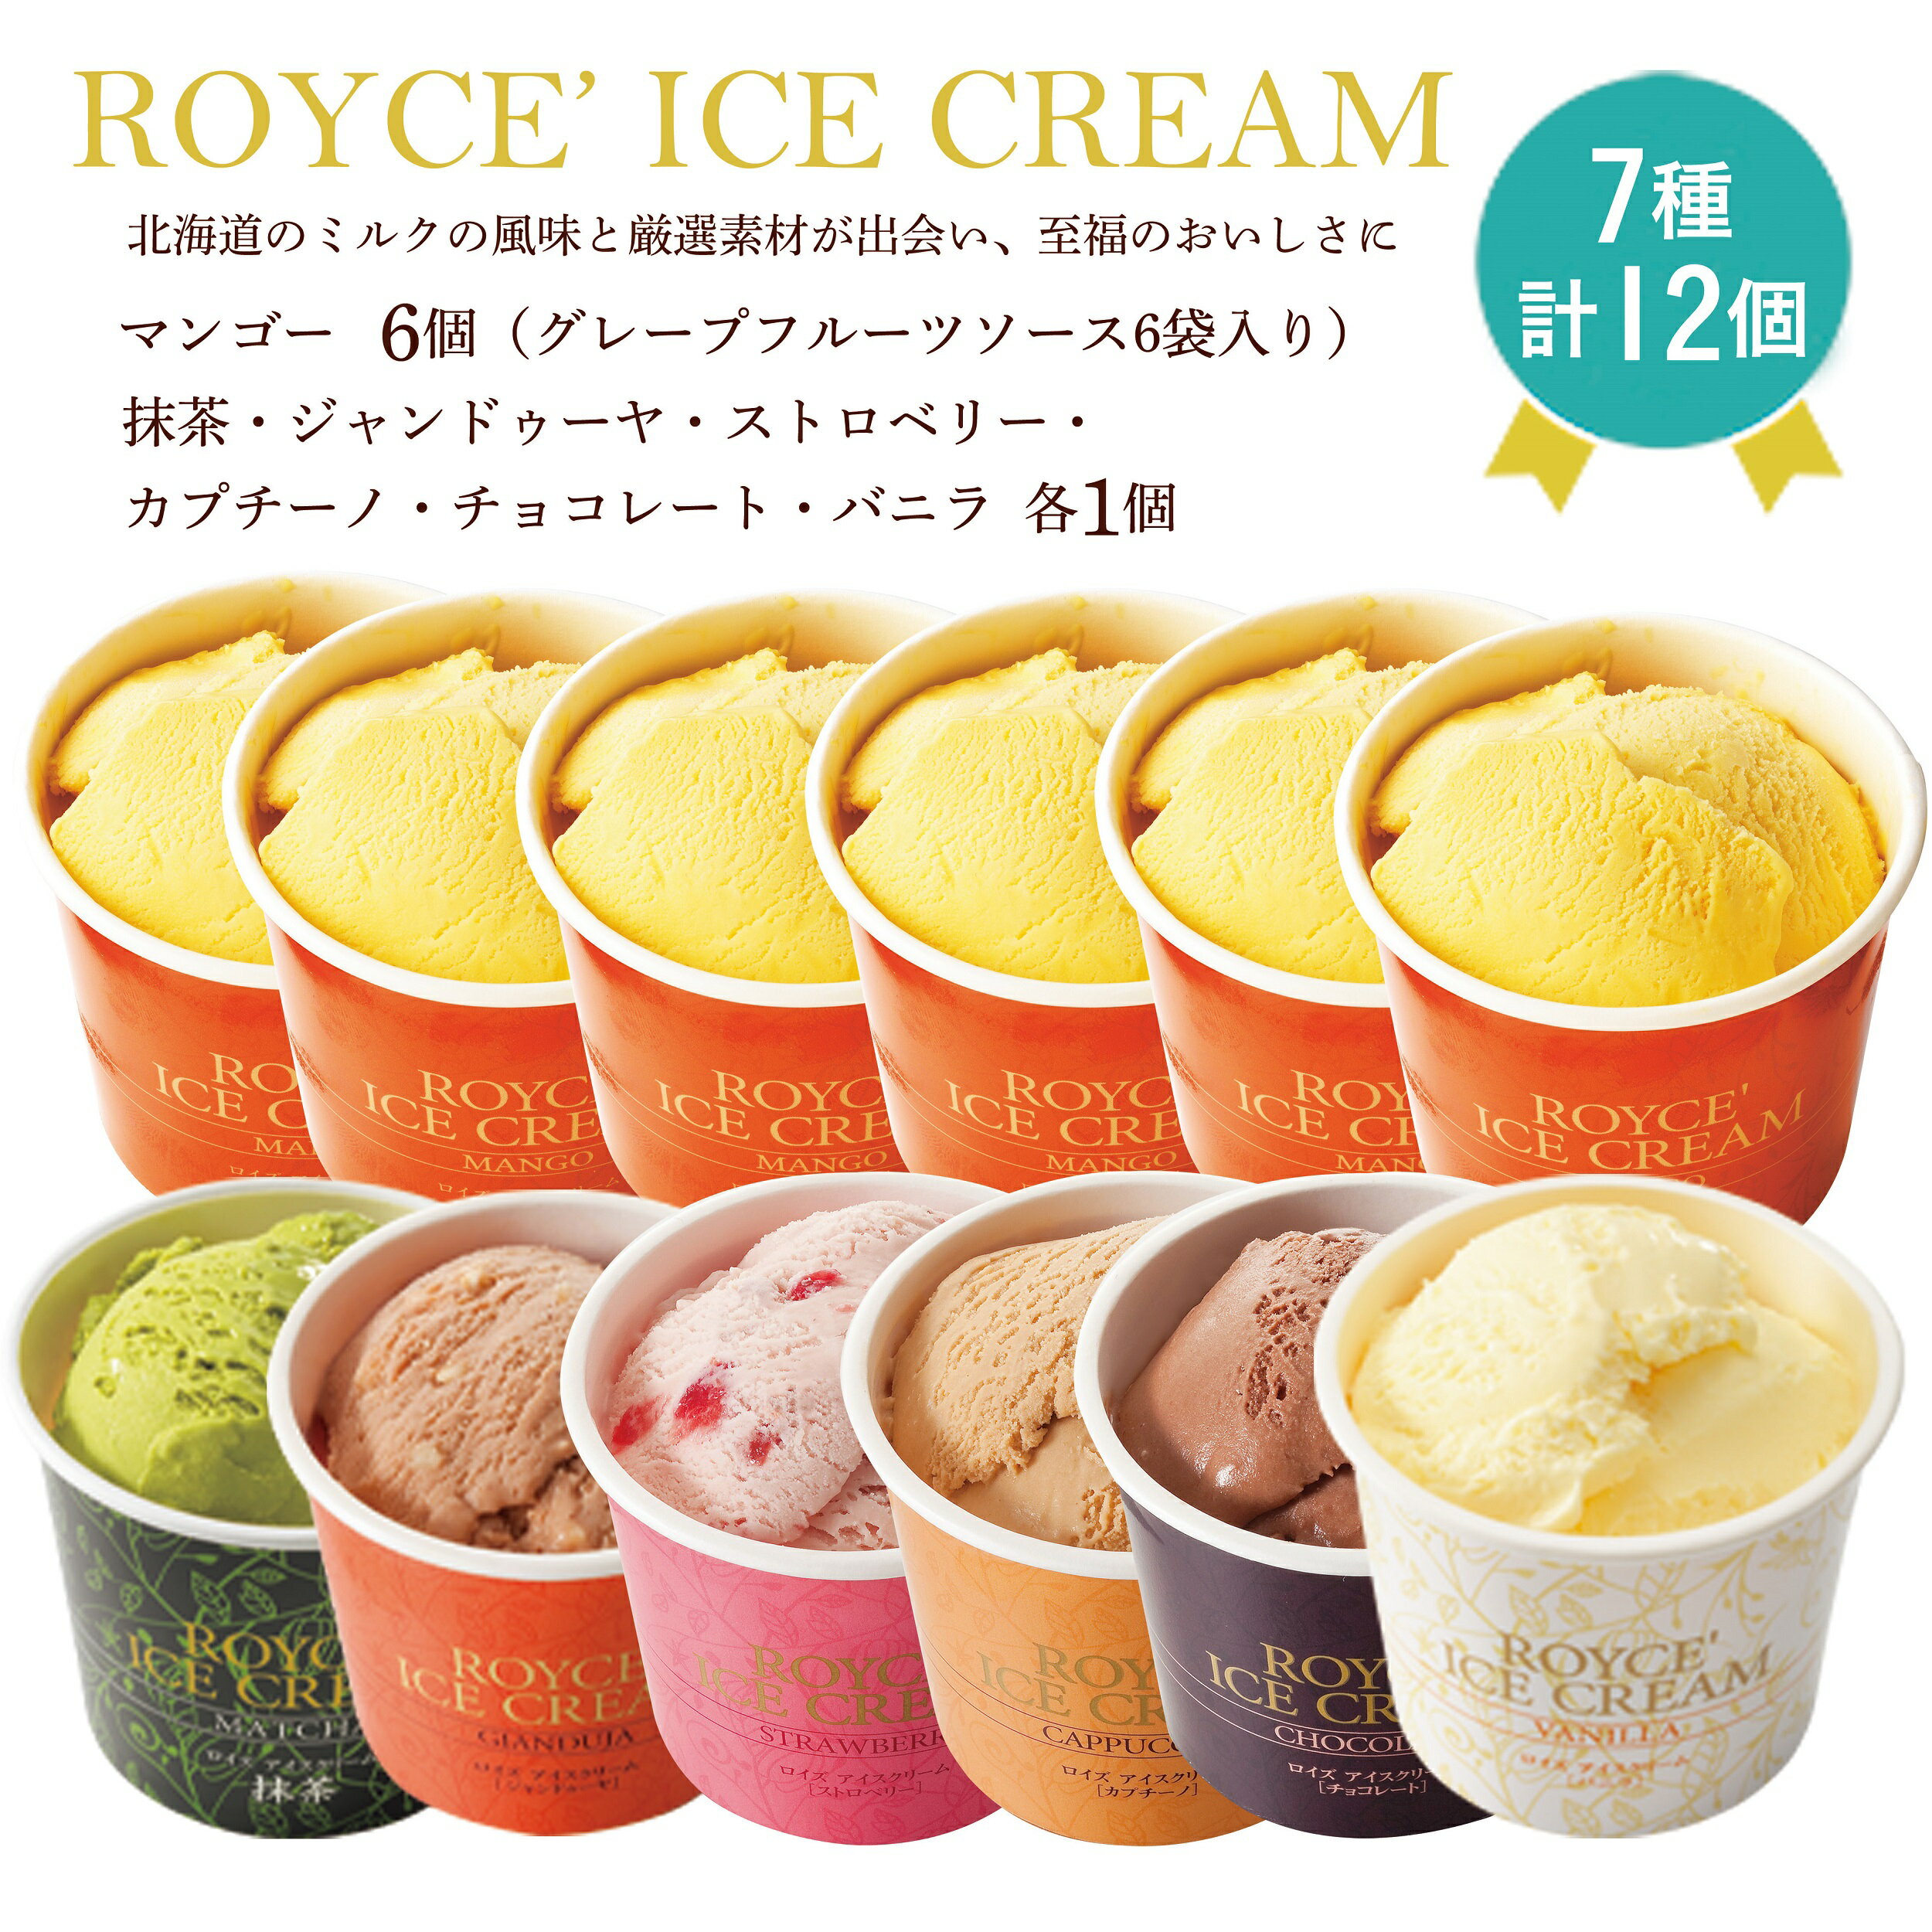 ROYCE'限定セット アイスクリーム バラエティセット[12個入]